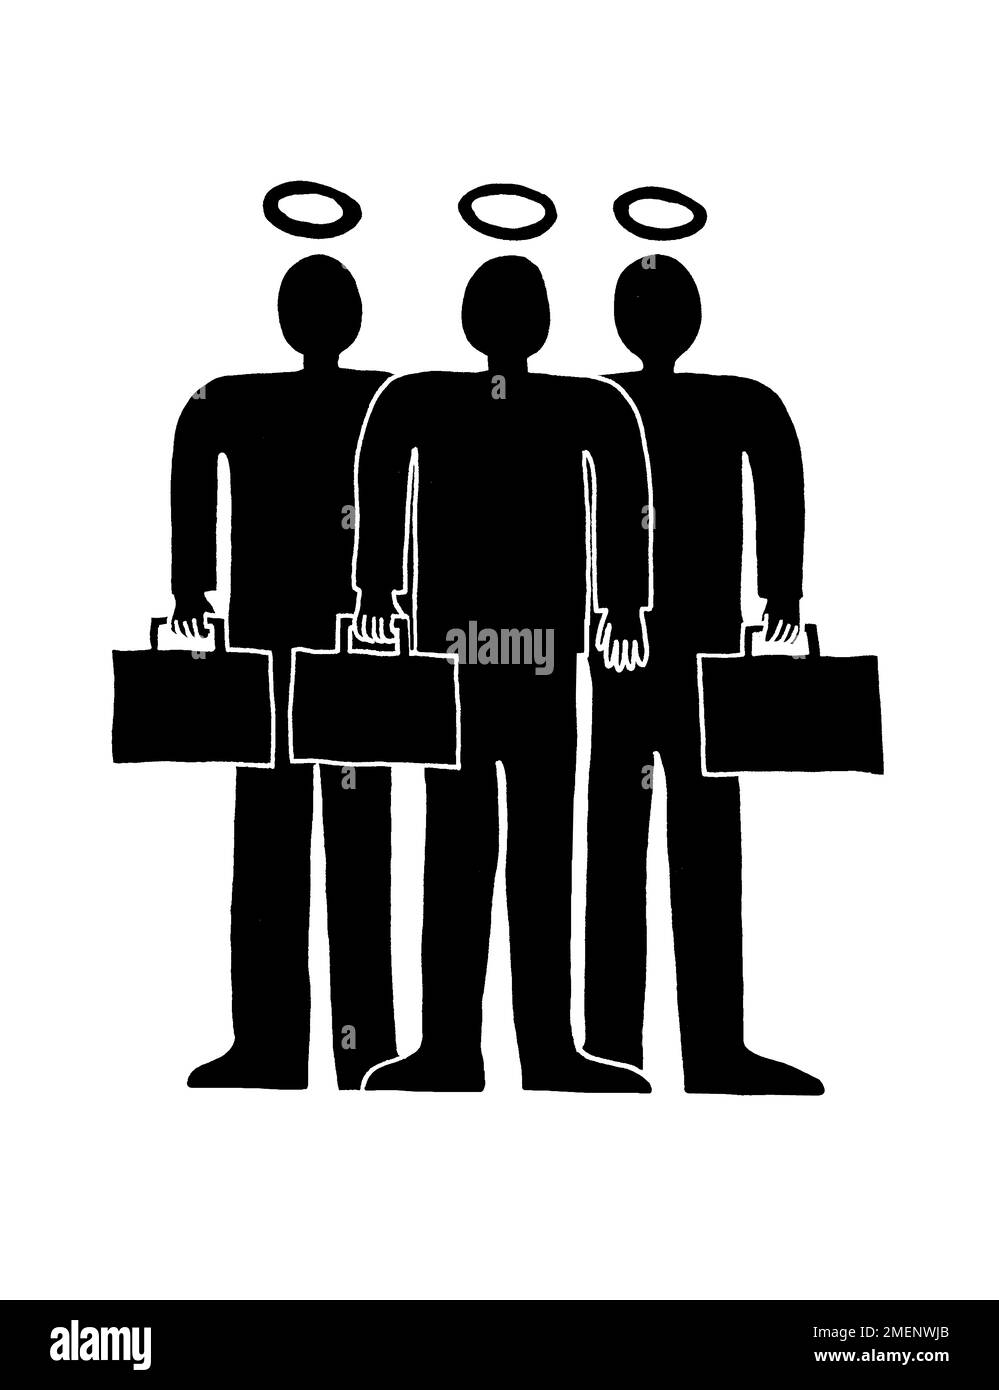 Illustration noire et blanche de trois hommes d'affaires avec des halos tenant des porte-documents Banque D'Images